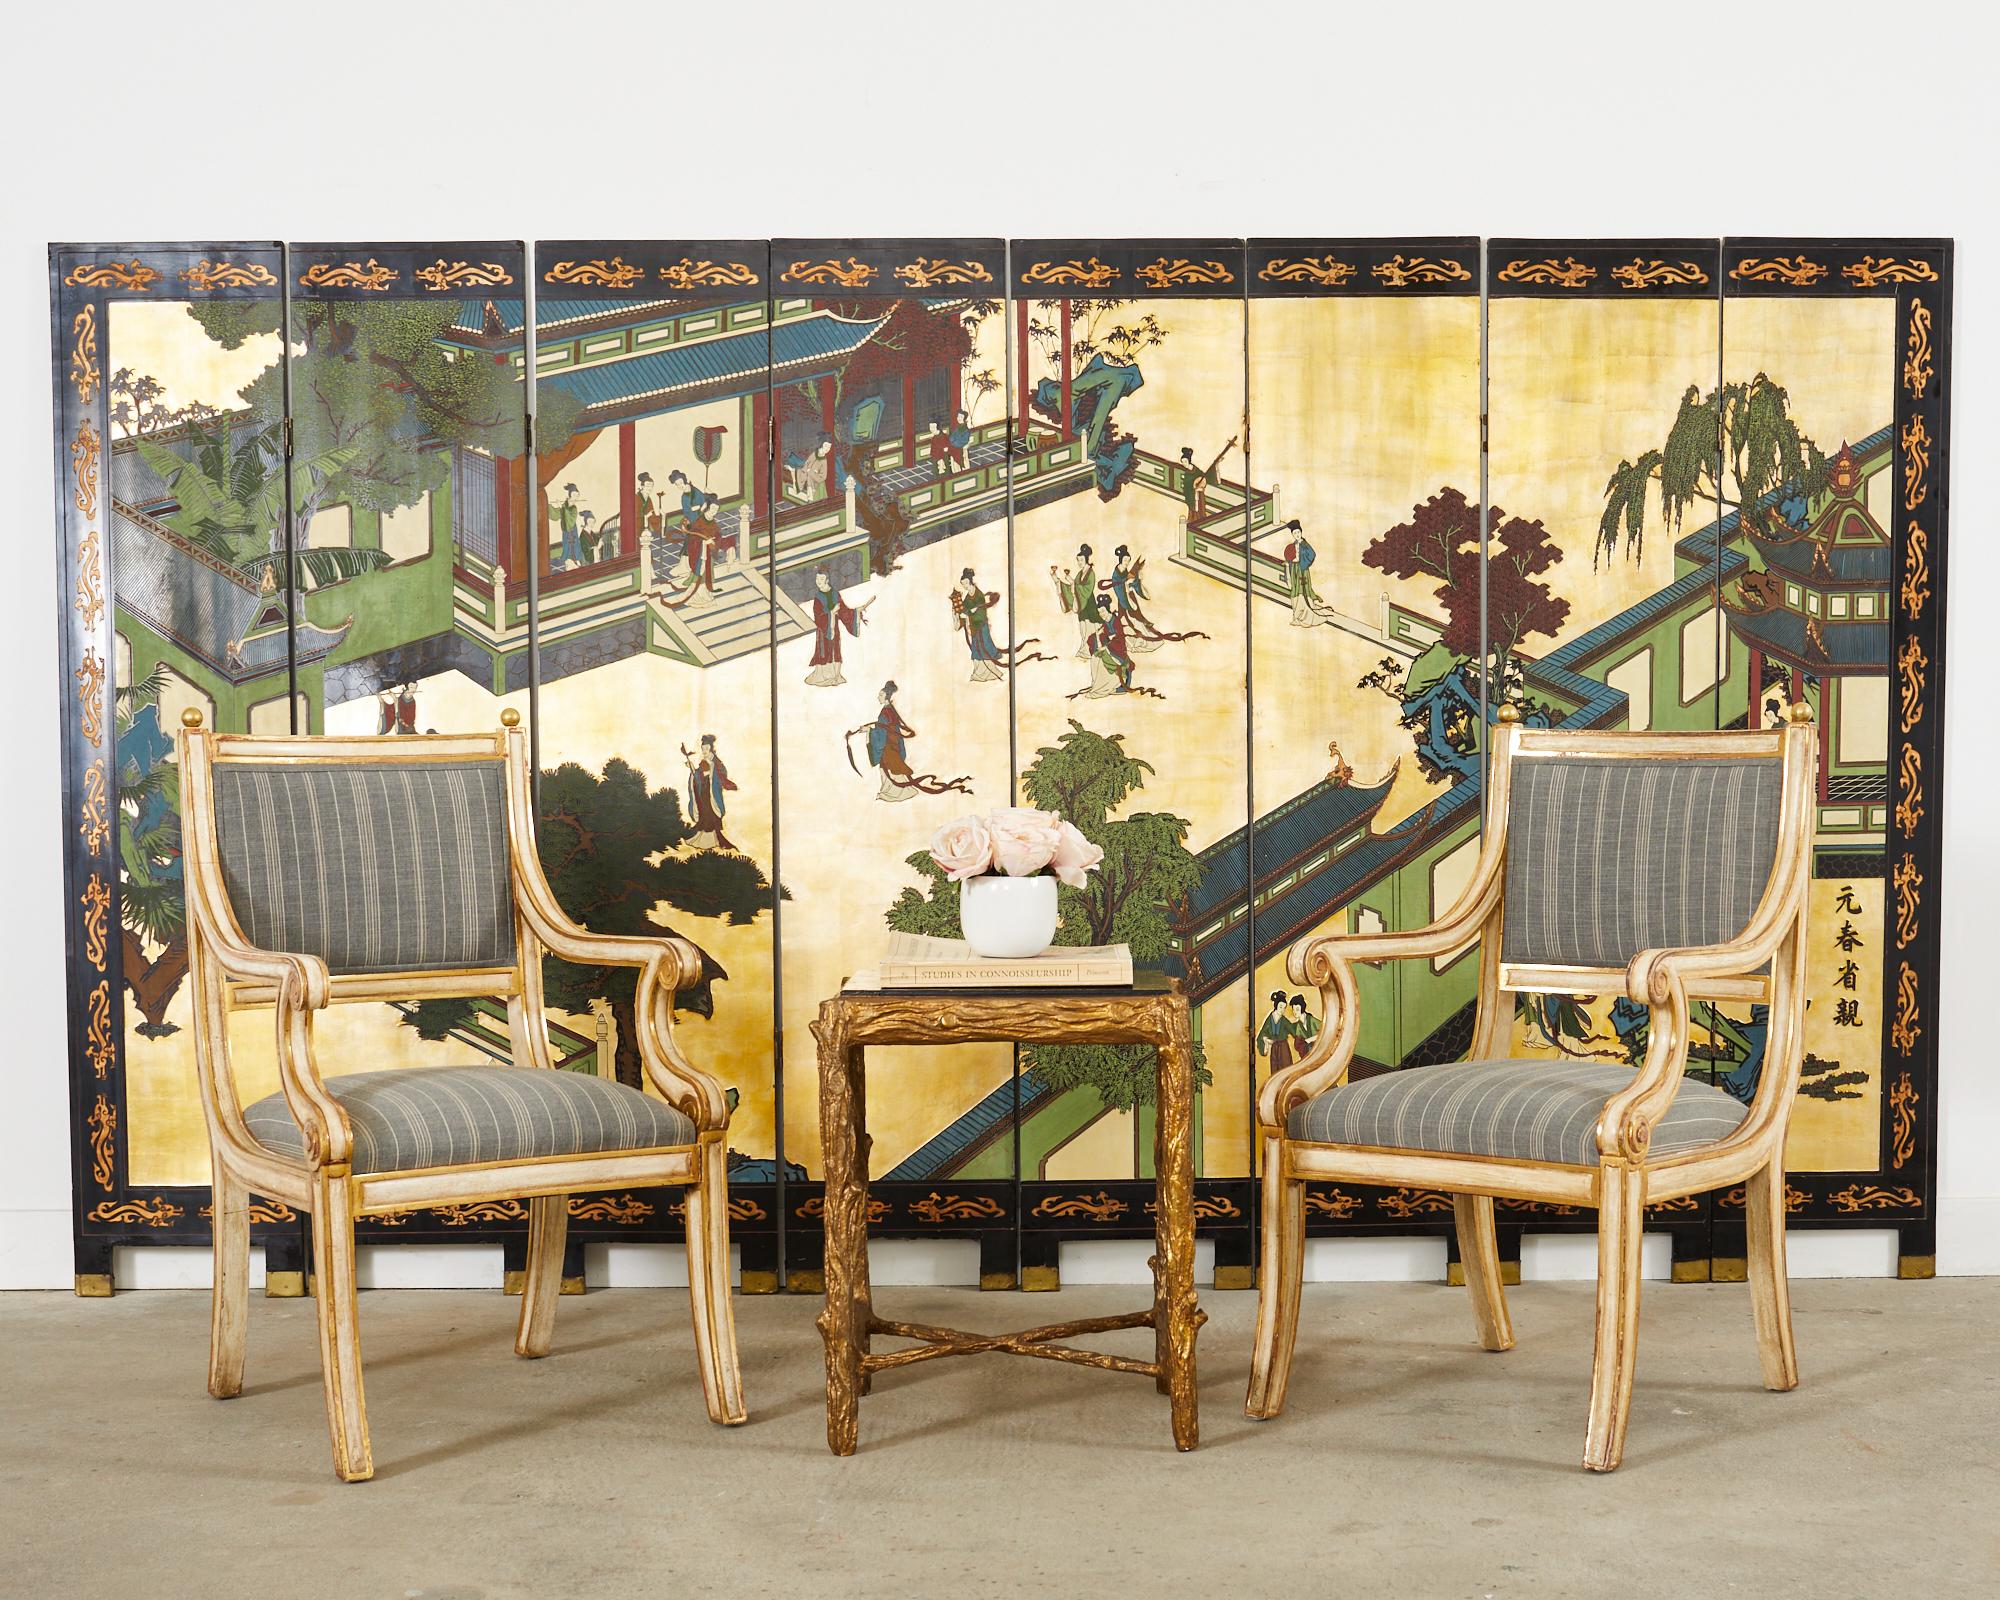 Magnifique paire de fauteuils de style néoclassique peints et dorés parcellaires, fabriqués par Dennis and Leen, Los Angeles, CA. Les chaises sont dotées d'un dossier carré et d'embouts en laiton patiné aux coins. Les accoudoirs et les supports